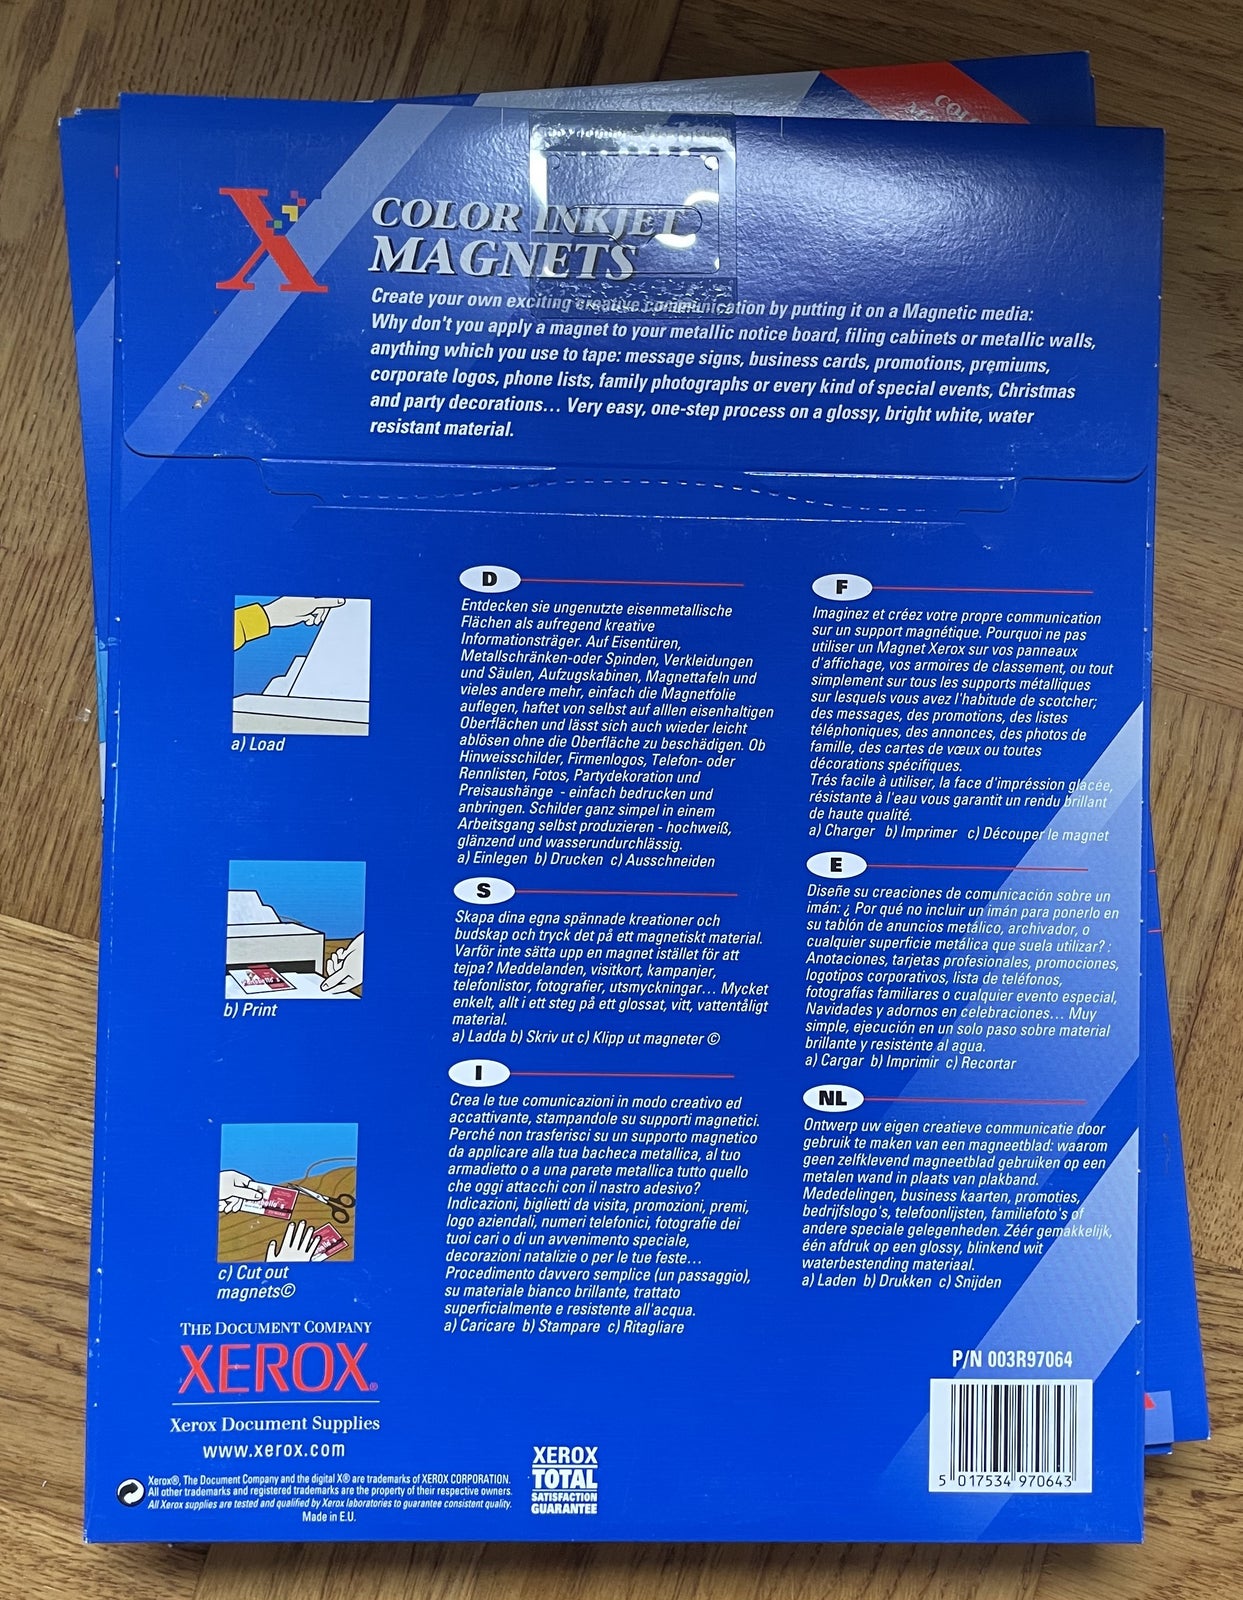 Fotopapir magnetisk, Xerox, Color inkjet magnets